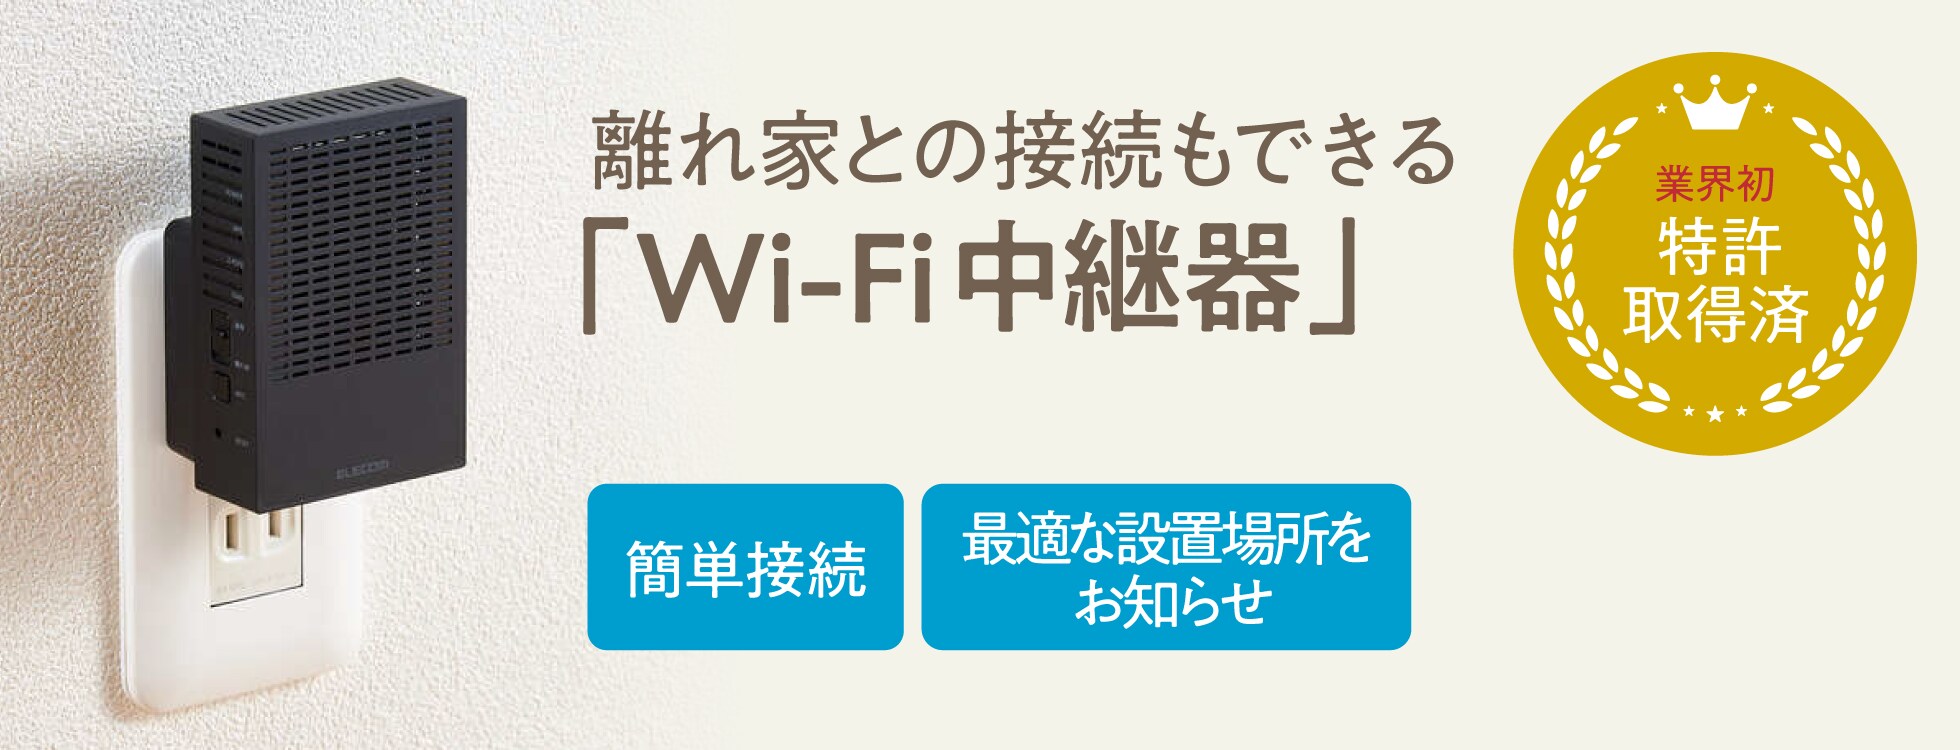 業界初、特許取得済の離れ家との接続もできる「Wi-Fi中継器」